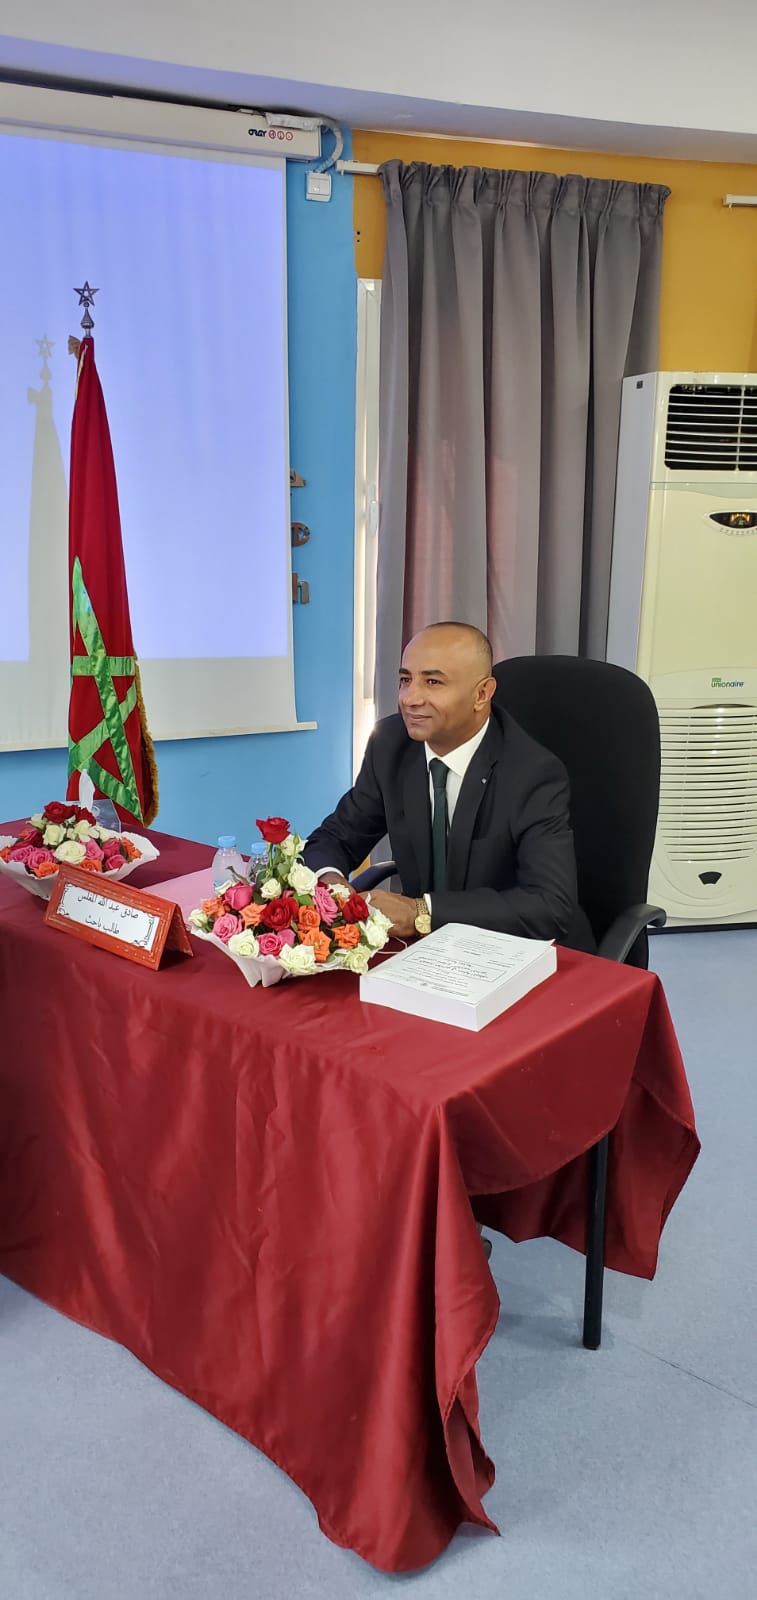 الباحث المغلس يحصل على درجة الدكتوراه بامتياز في القضاء الاداري من المغرب 